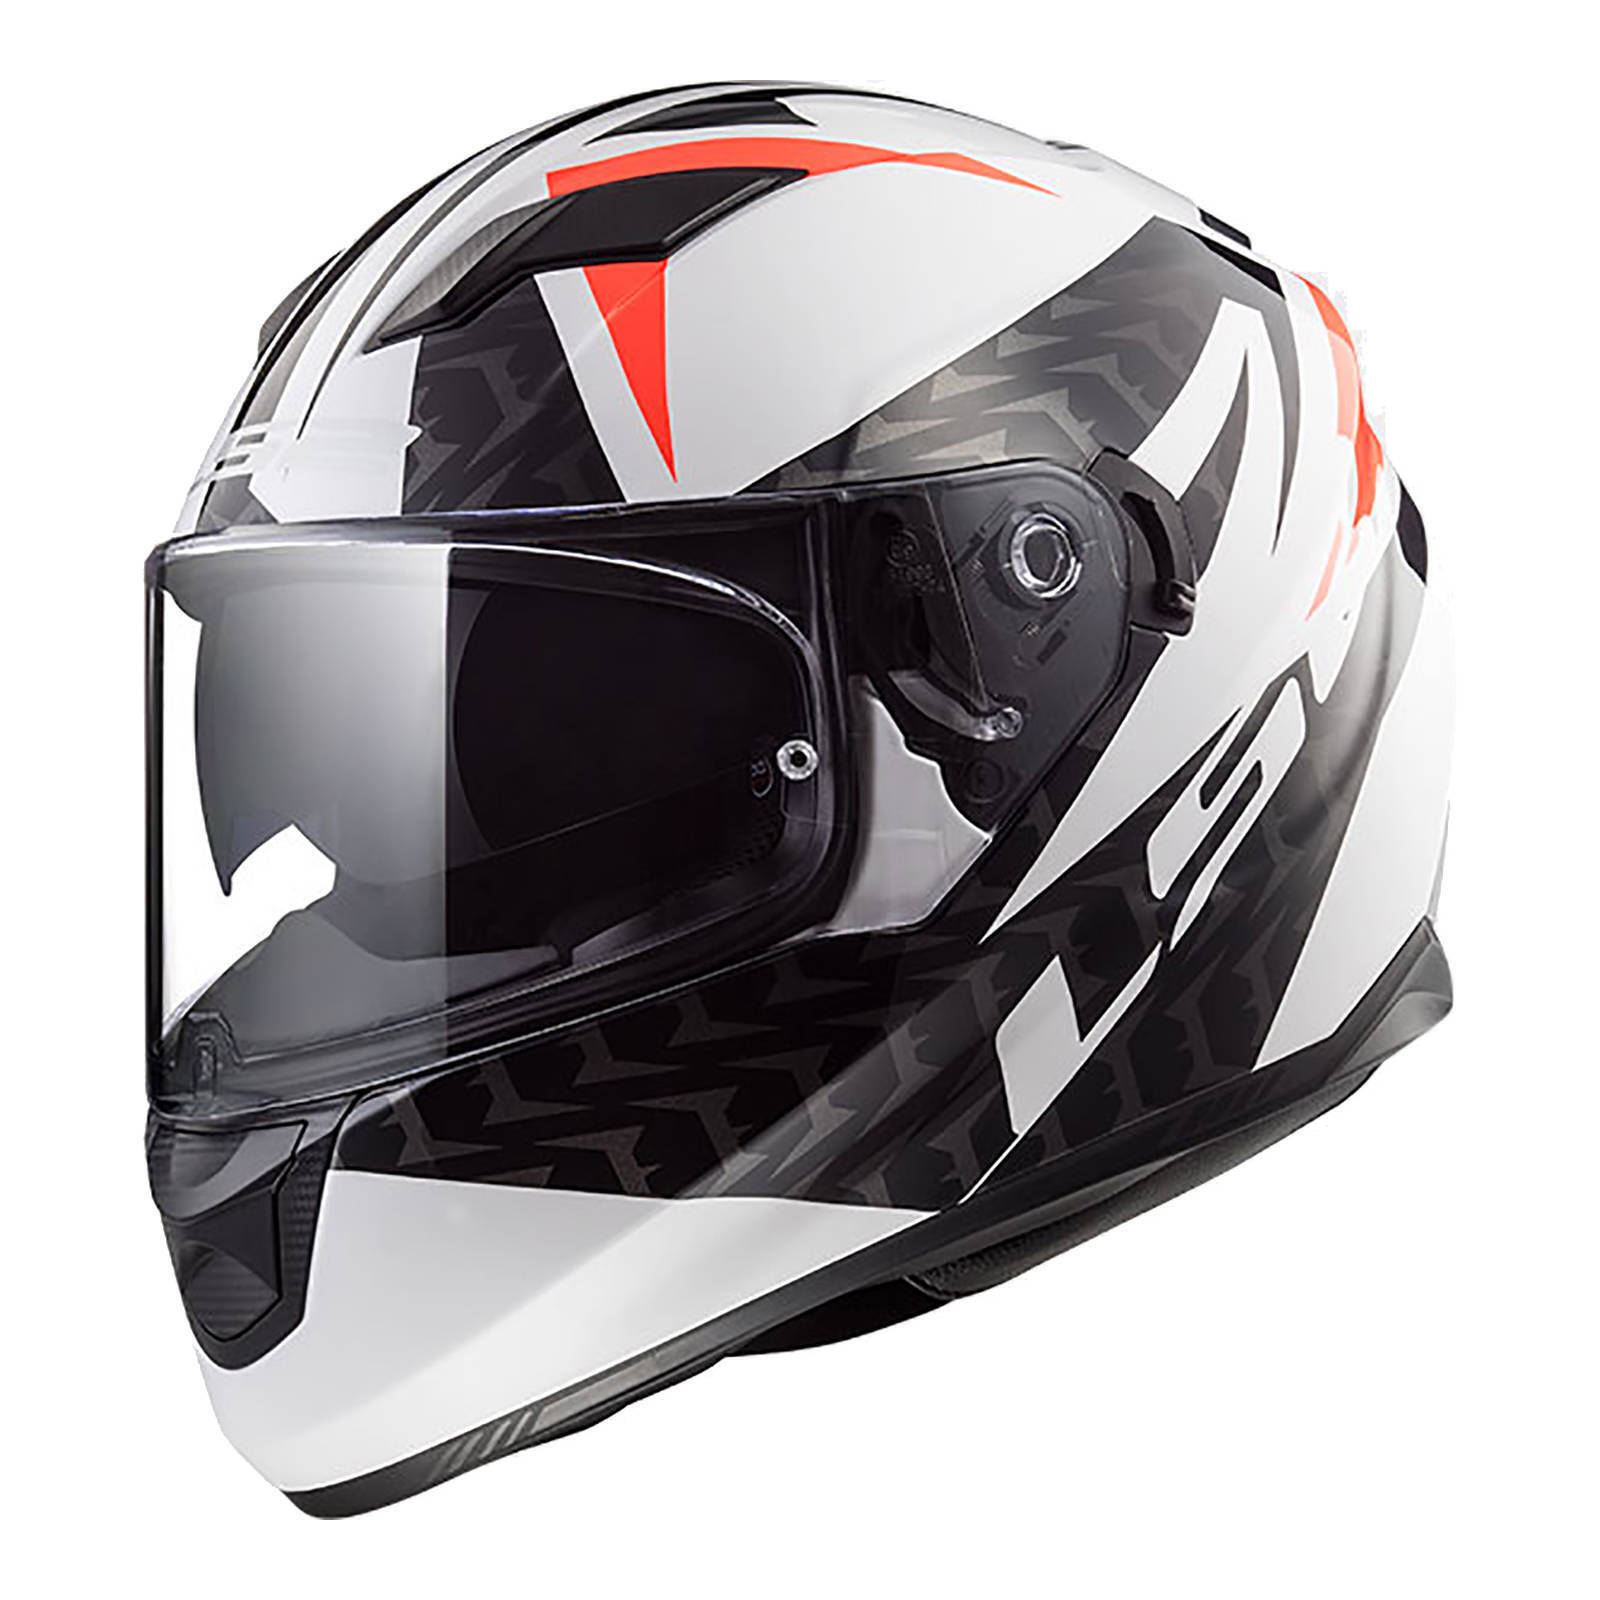 LS2 FF320 Stream Evo Commander Helmet - White / Black / Red